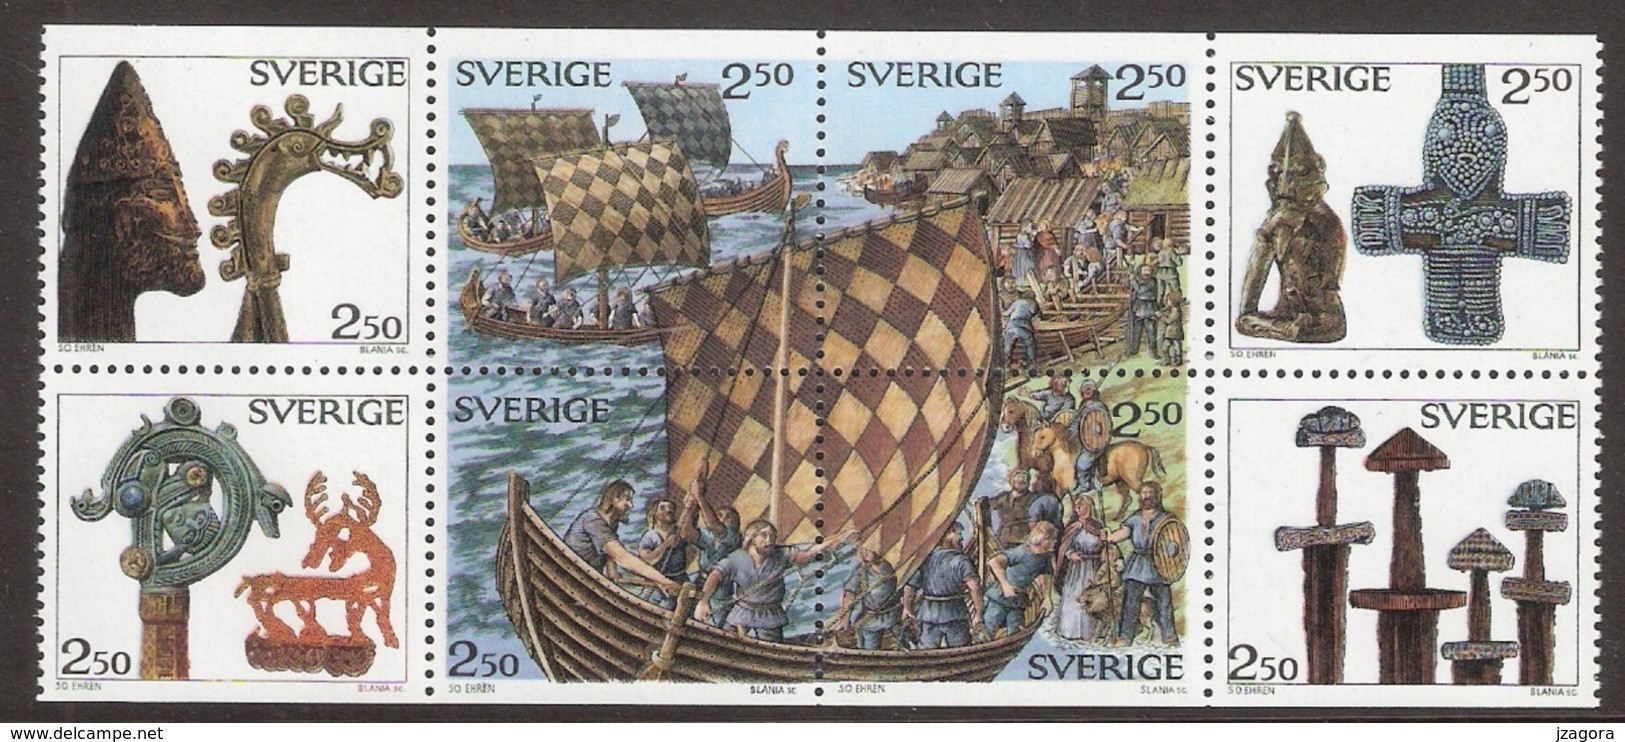 VIKINGS WIKINGER HISTORY SWEDEN SUEDE SCHWEDEN 1990 MNH MI  1592 - 1599 SLANIA War Ship  Boat - Archäologie